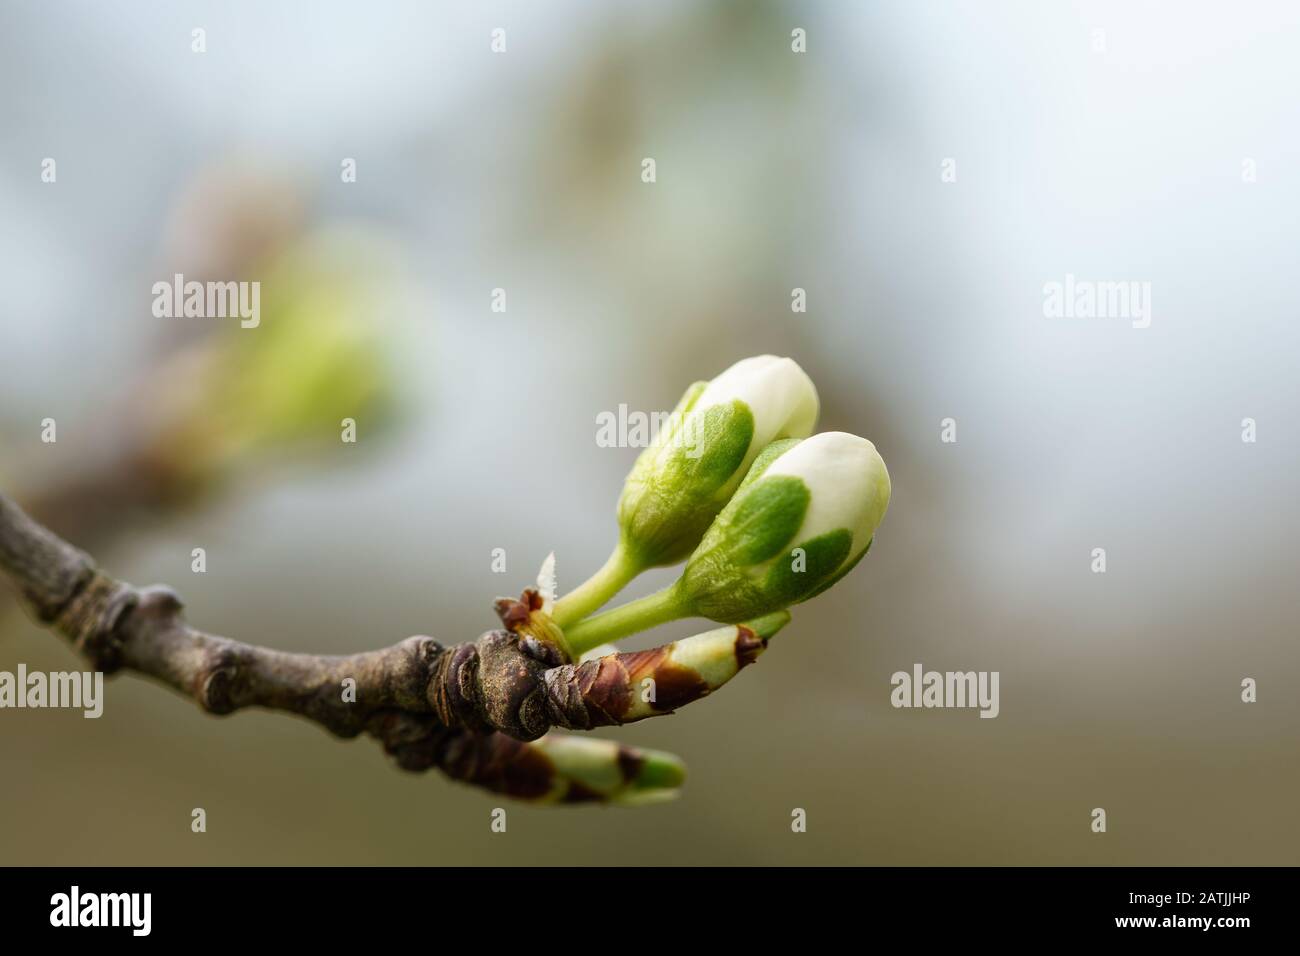 Les bourgeons hivernaux d'un cerisier (prunus avium) avec des sépales verts et des pétales blancs s'éplorent dans le verger allemand au printemps. Macro gros plan, flou d'arrière-plan Banque D'Images